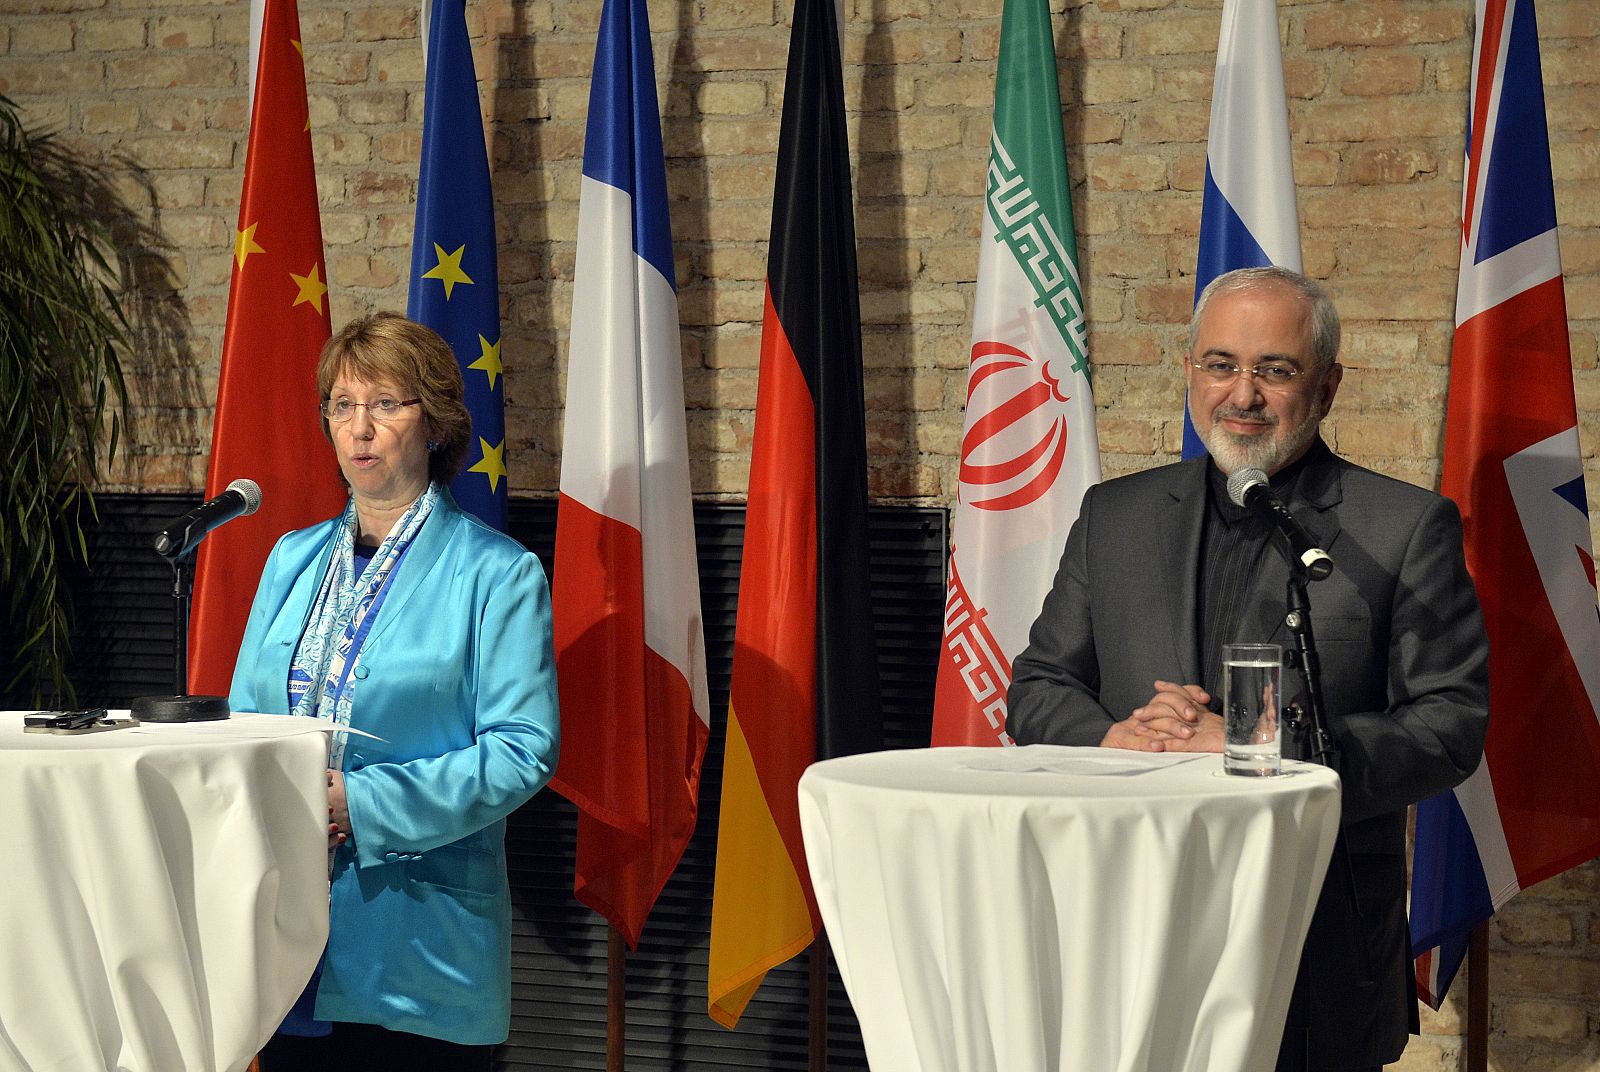 Catherine Ashton, Alta Representante de la Unión para Asuntos Exteriores y Política de Seguridad, y el ministro de exteriores iraní, Javad Zarif, comparecen ante los medios tras la reunión en Viena